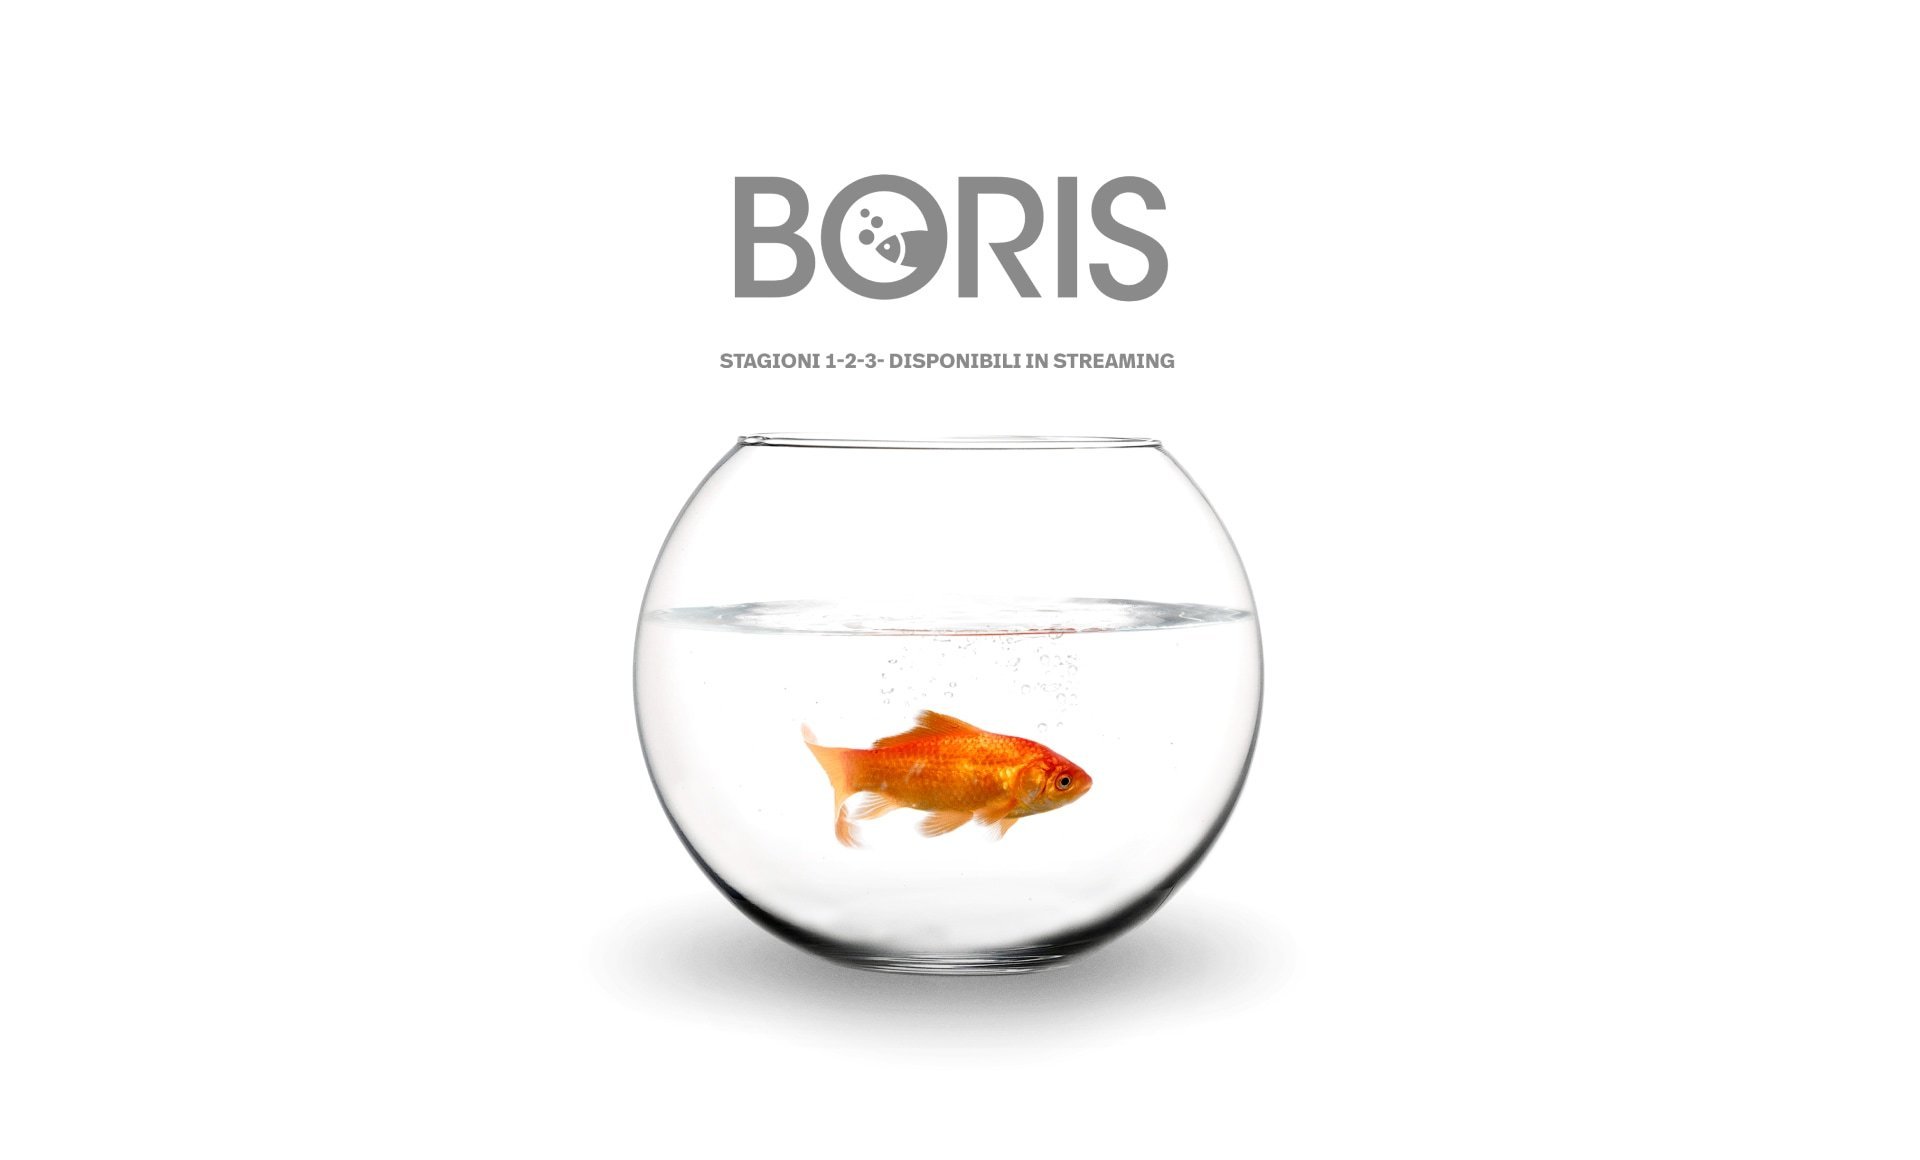 Immagine di un pesce rosso in un acquario a palla e logo della serie TV Boris